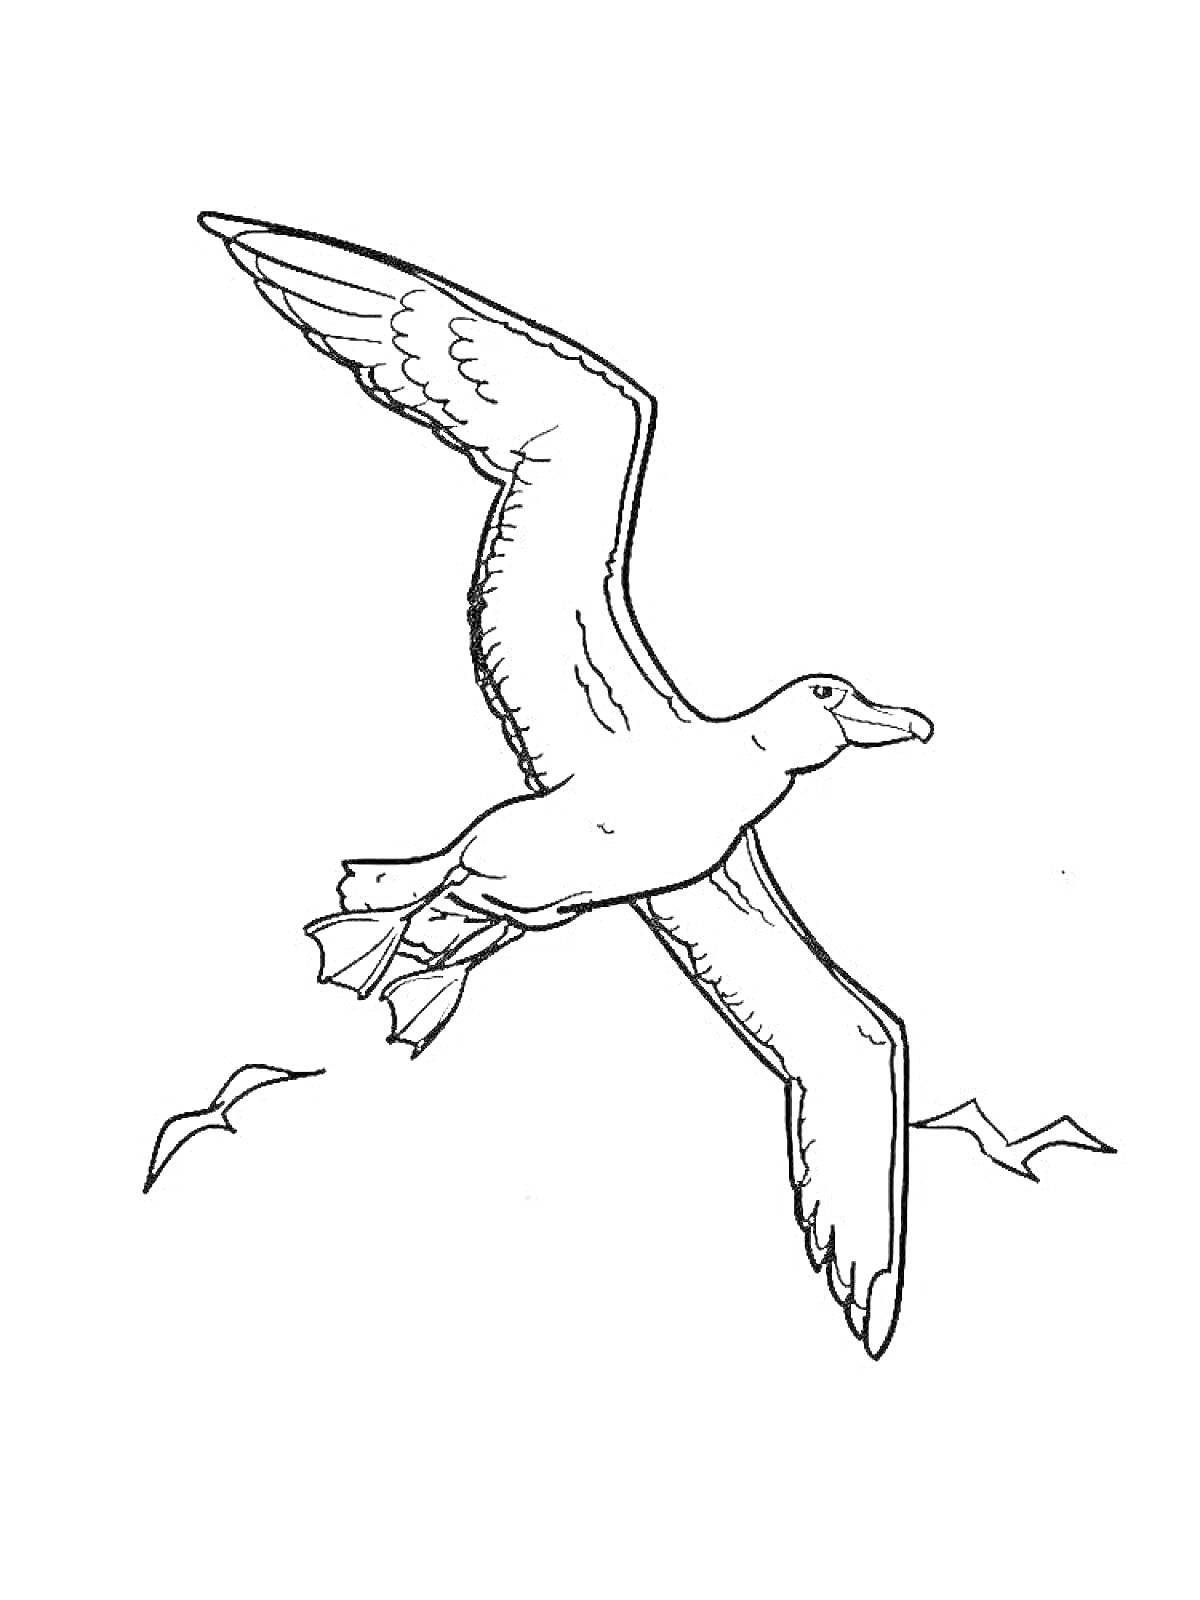 Летящий альбатрос с рисунком маленьких птиц на заднем плане и одной птицей на переднем плане